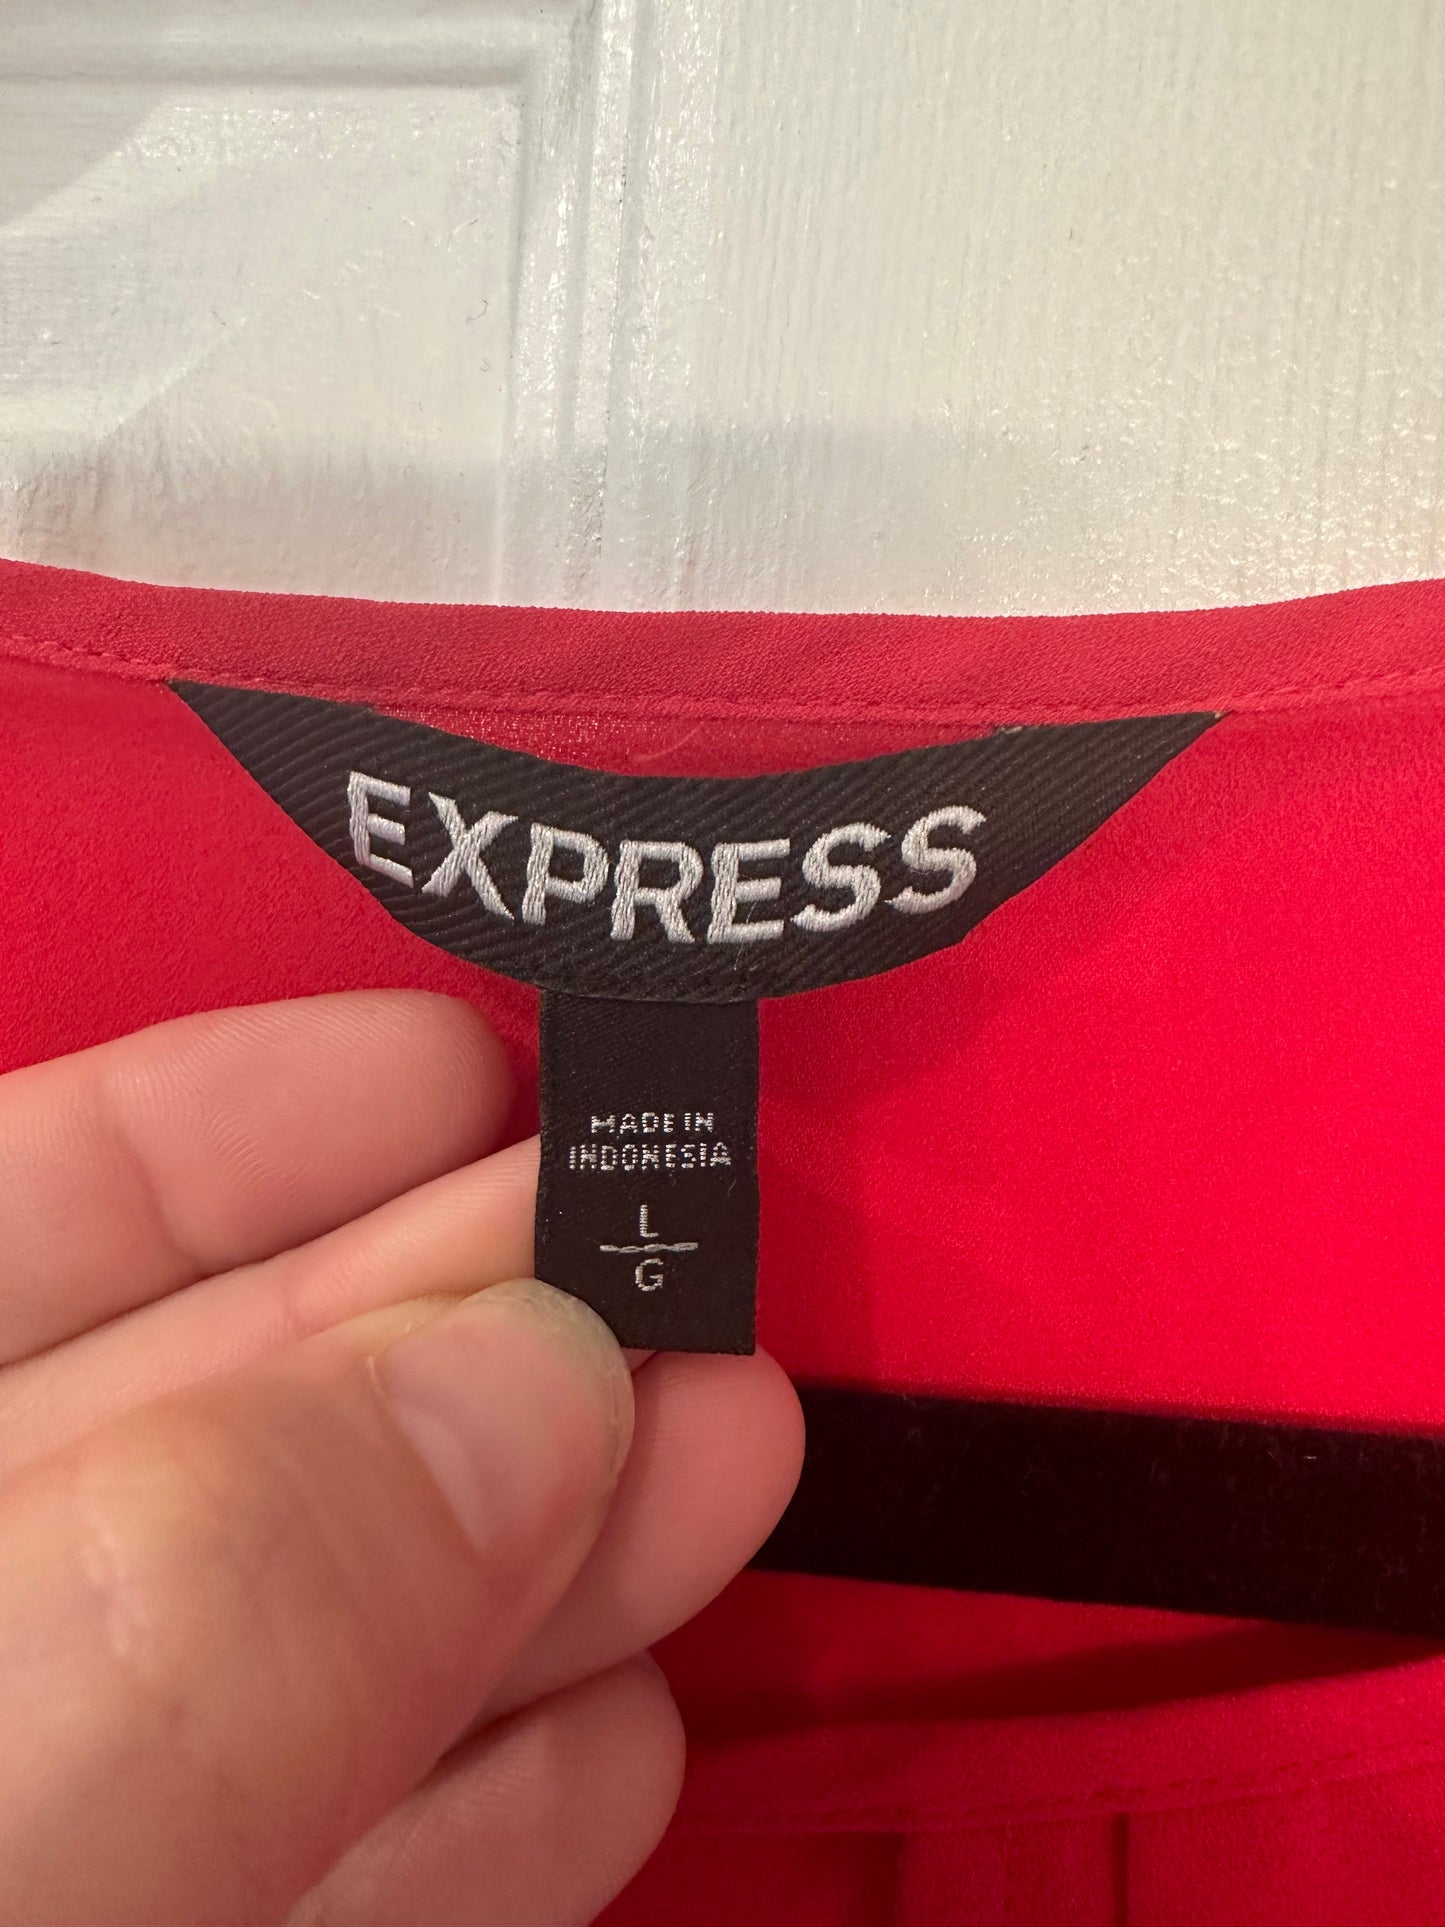 Express Women’s Shirt - Size L - Pink